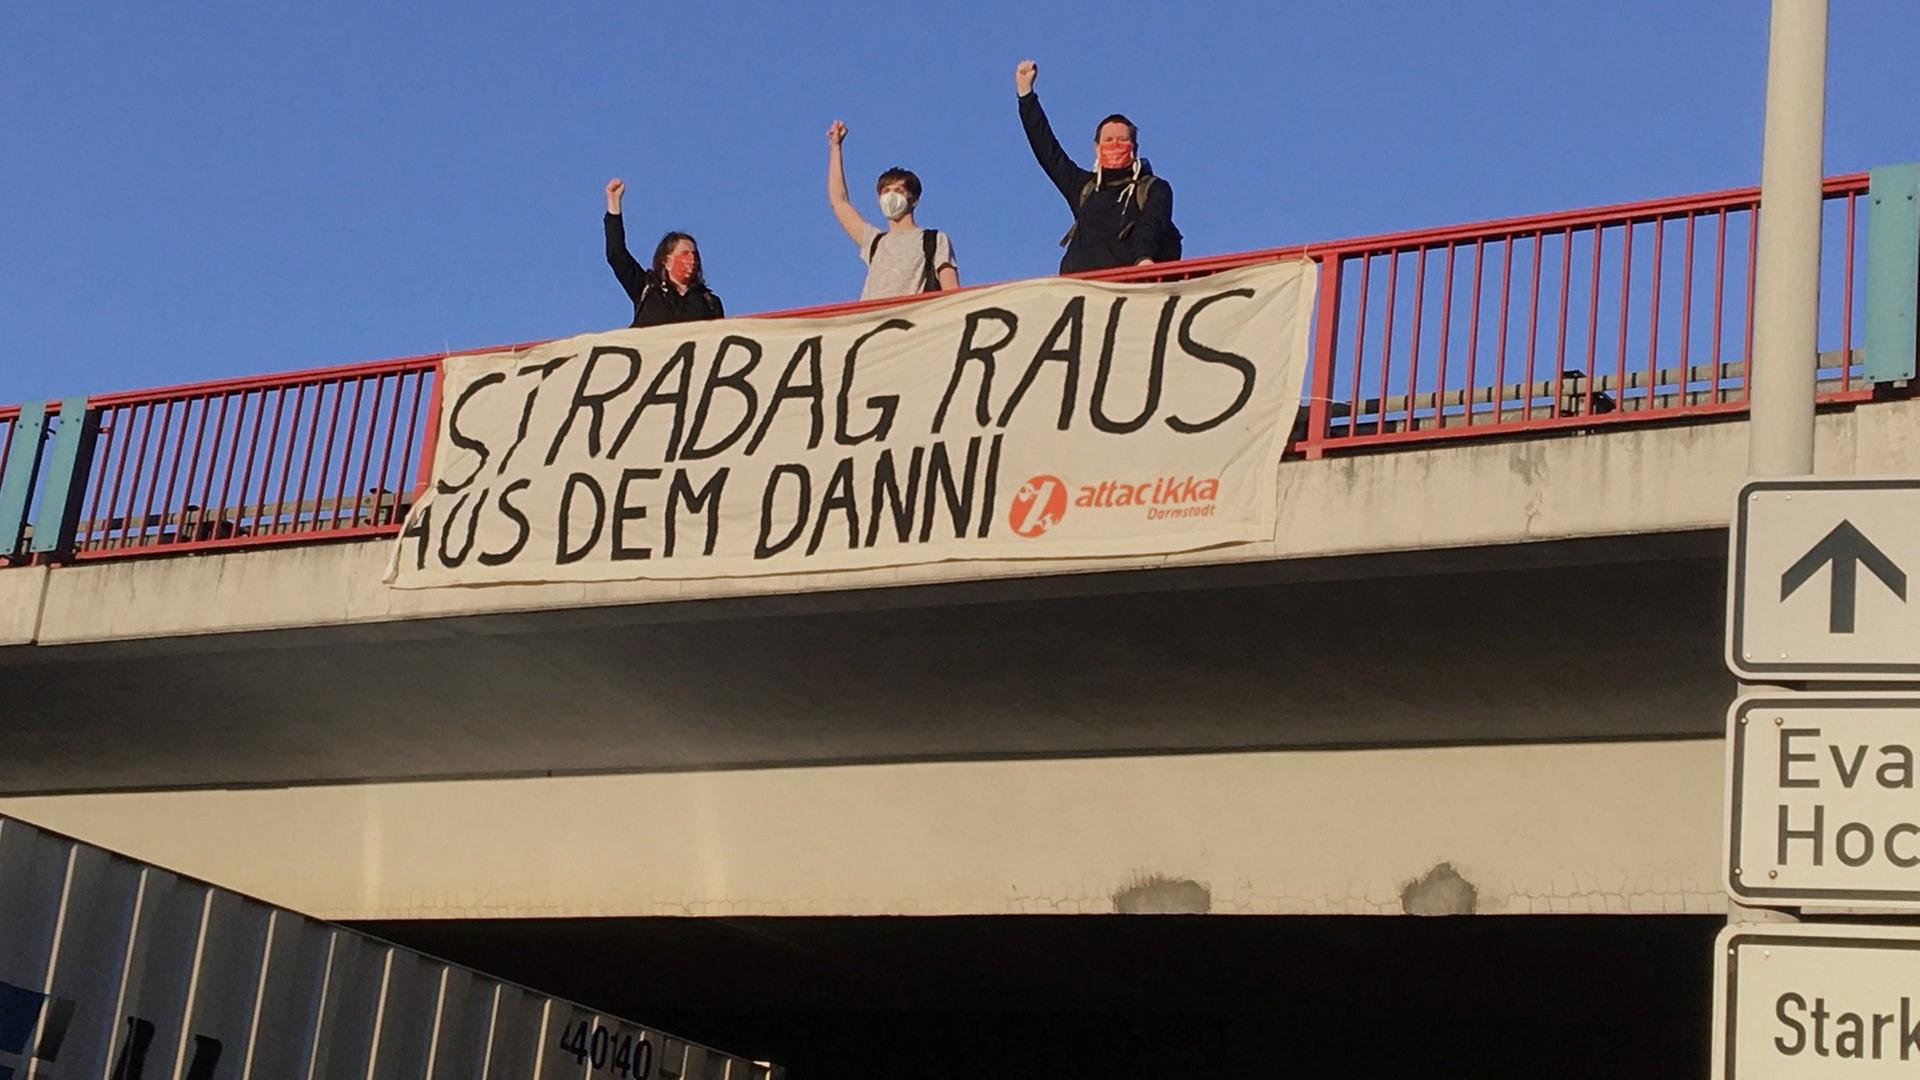 Auf einer Autobahnbrücke posieren drei Aktivisten vor einem Stofftransparent mit der Aufschrift "Strabag raus aus dem Danni"